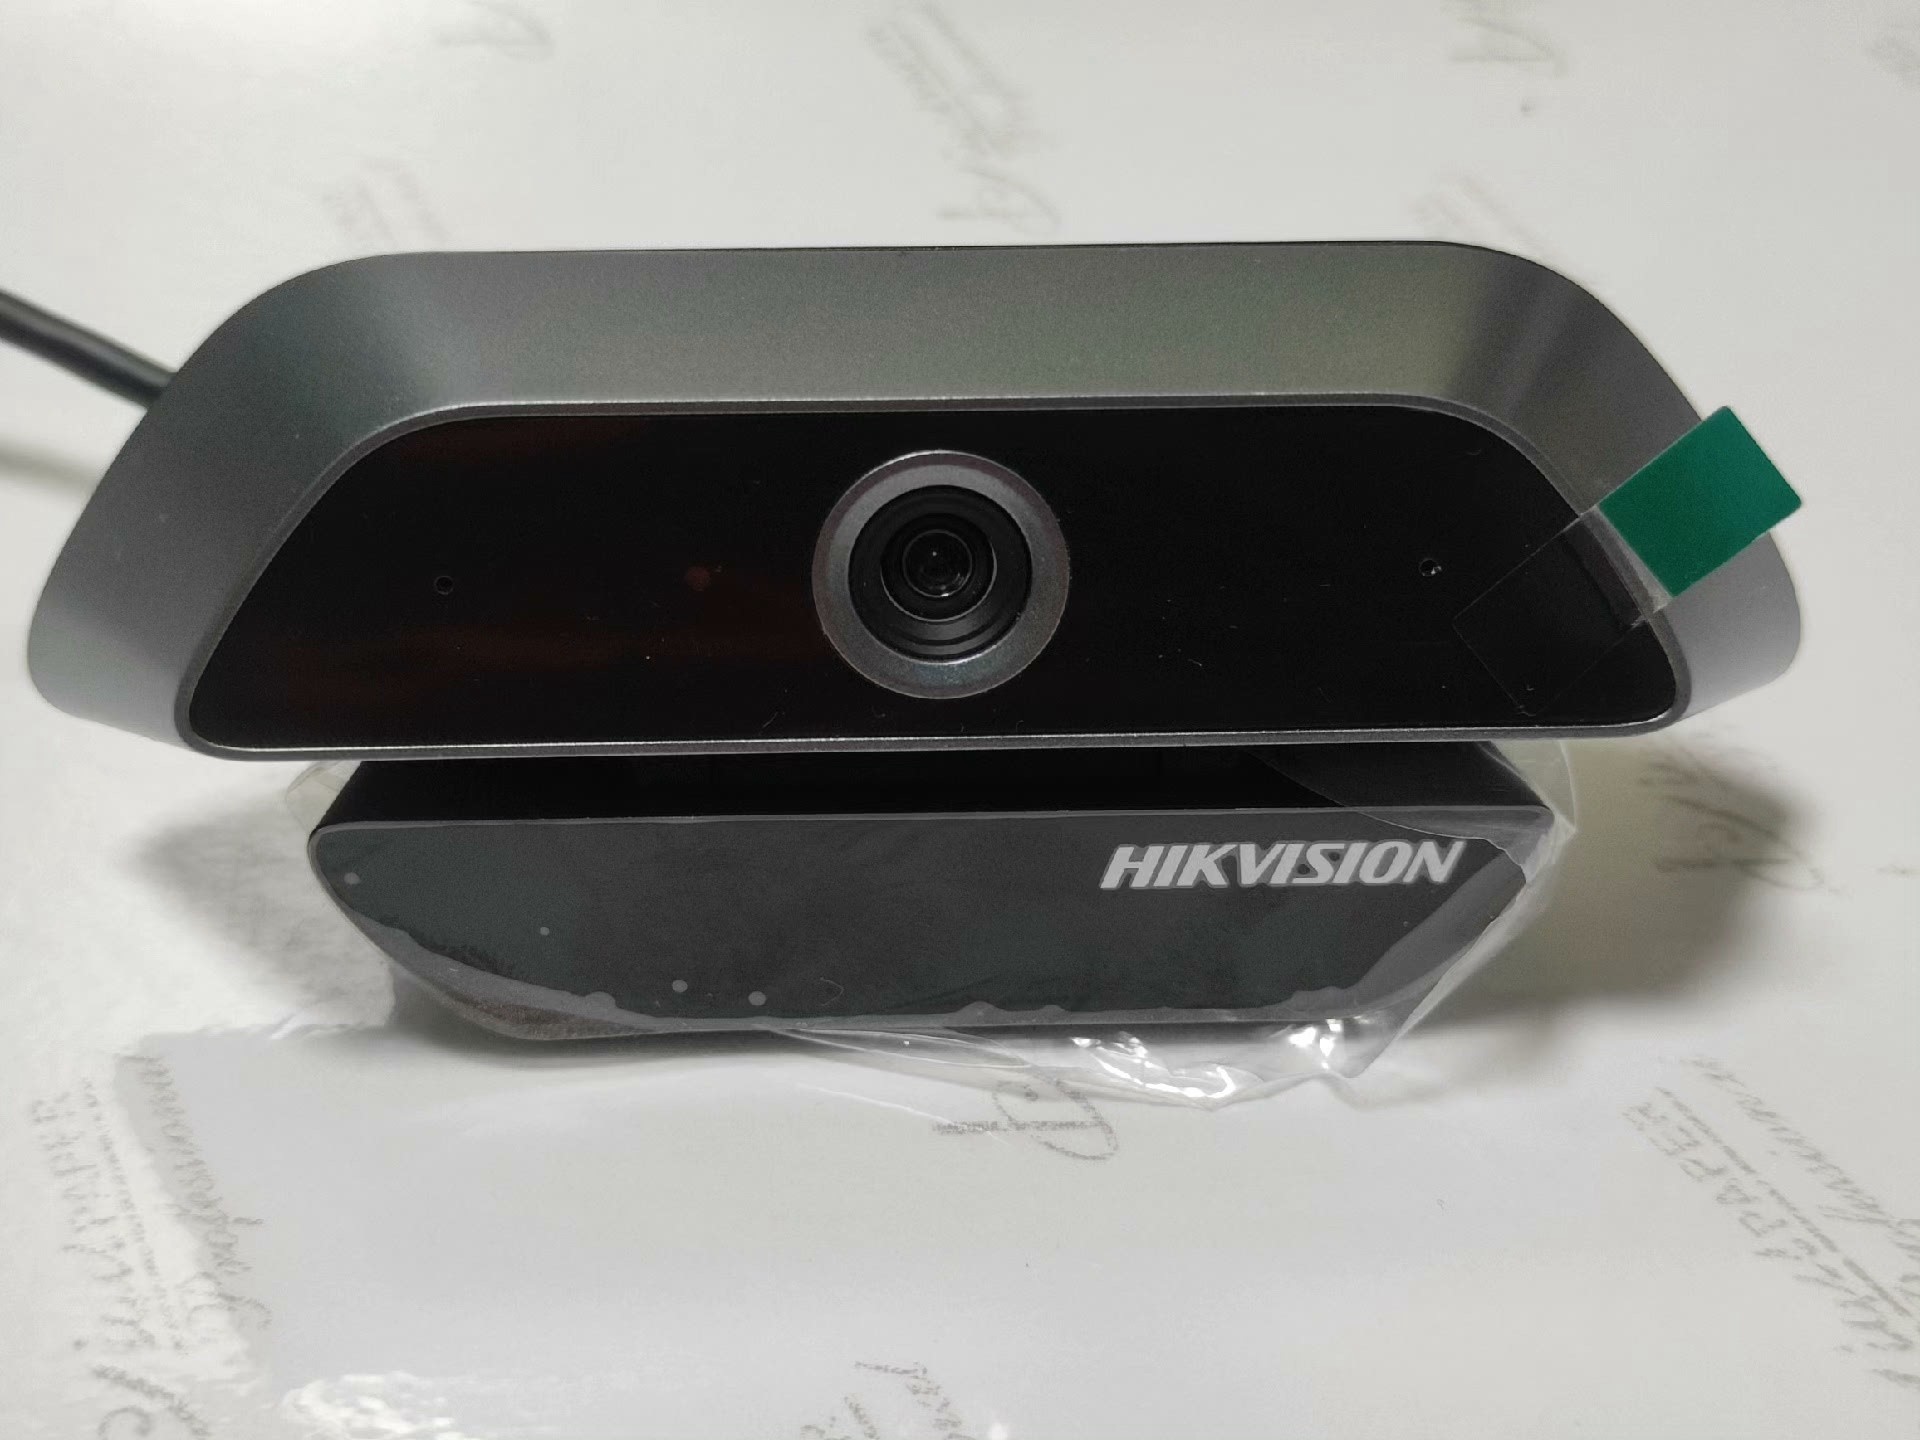 海康威视USB摄像头,没用过几次,包装盒还在,型号DS-U1议价议价